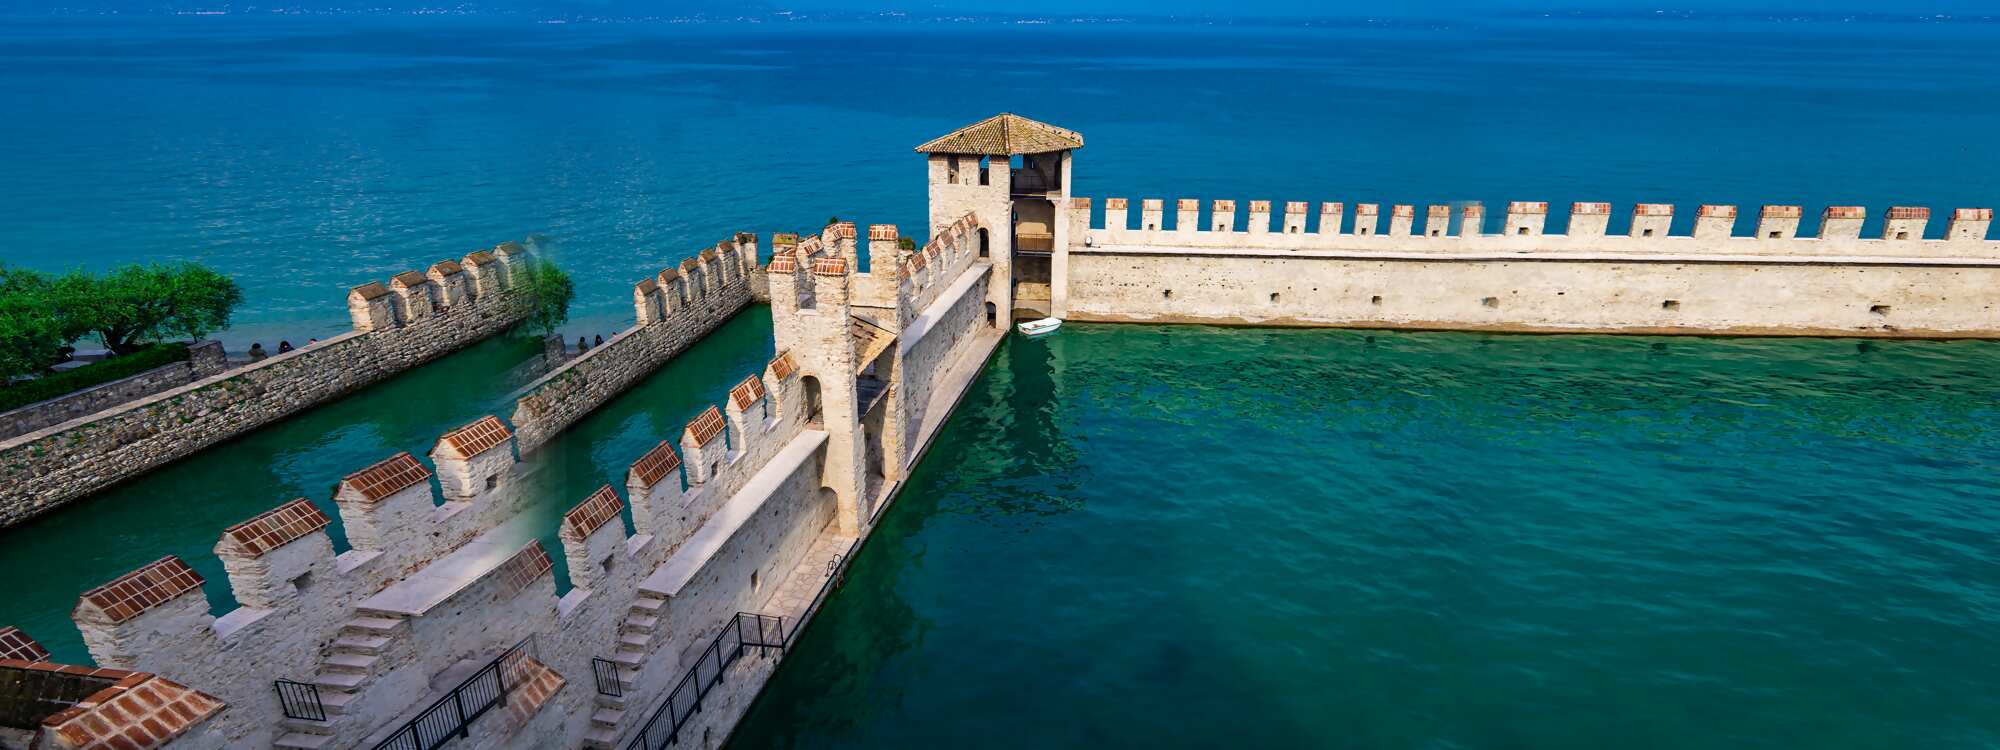 Die Burg von Sirmione, das Castello Scaligero, ist eine beeindruckende Wasserburg und größte Sehenswürdigkeit des Ortes am Südufer  in der Region Gardasee